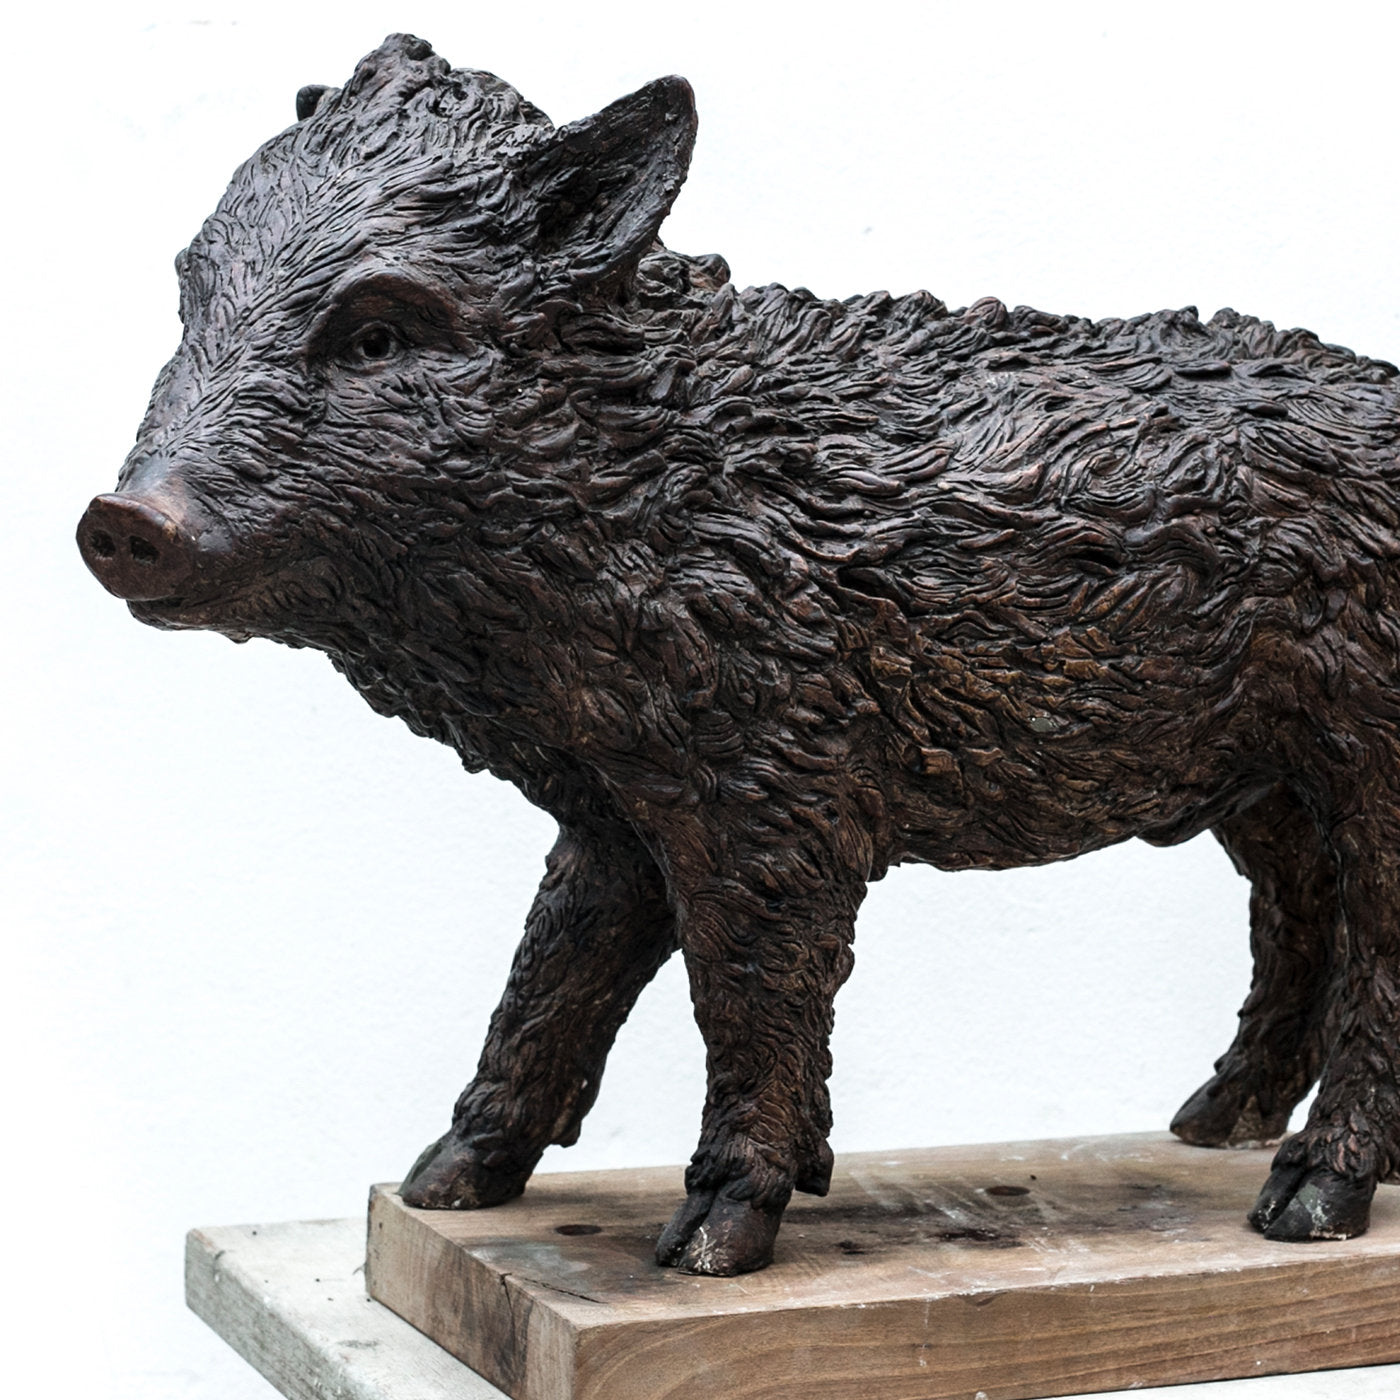 Baby Wild Boar Sculpture - Alternative view 1